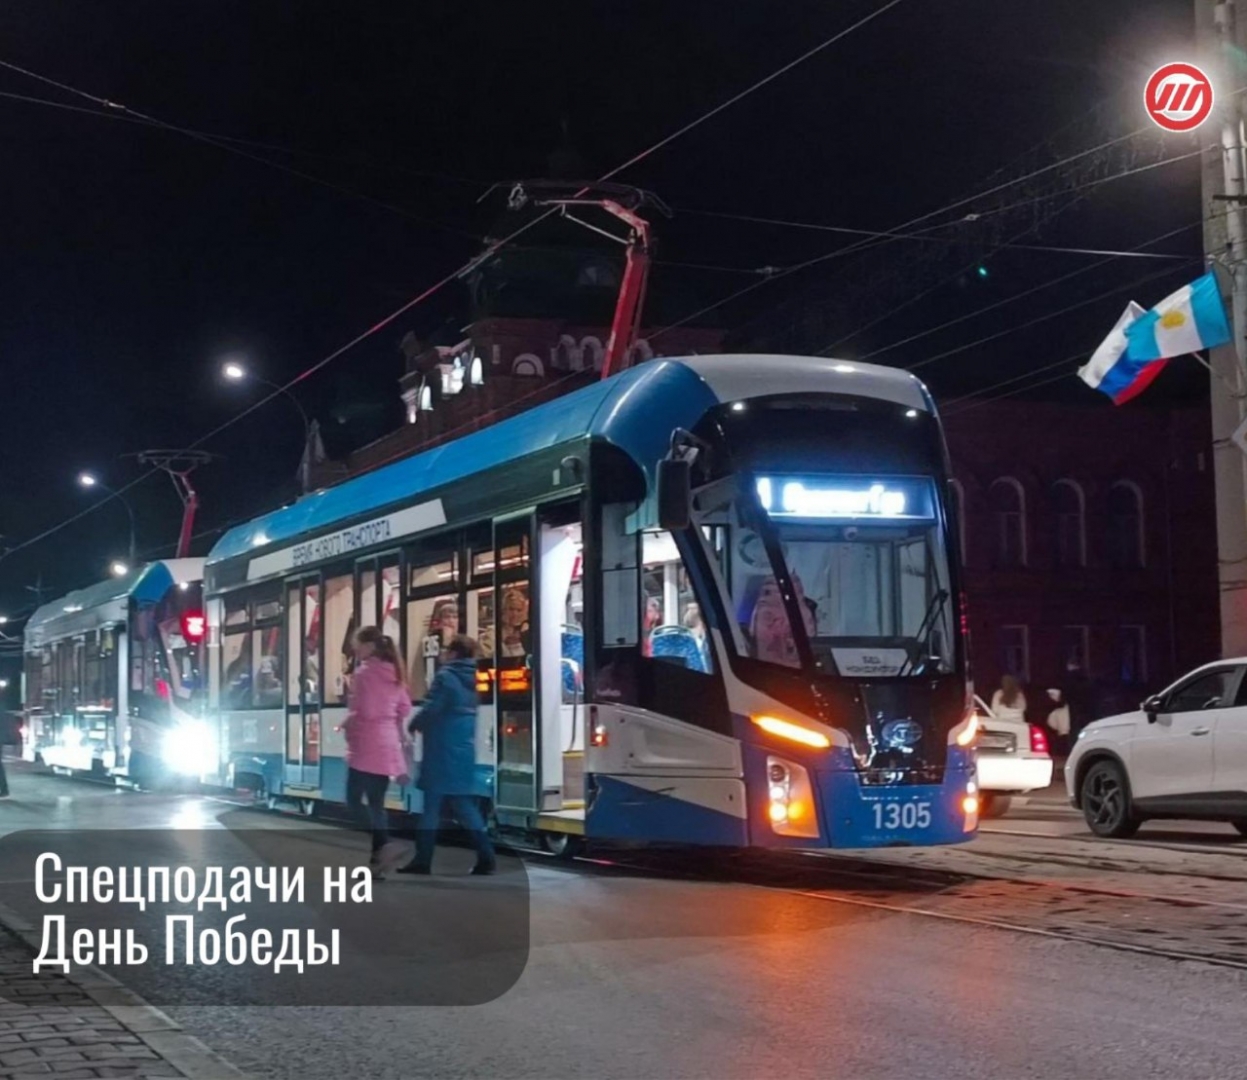 После празднования Дня Победы ульяновцев по домам развезут трамваи